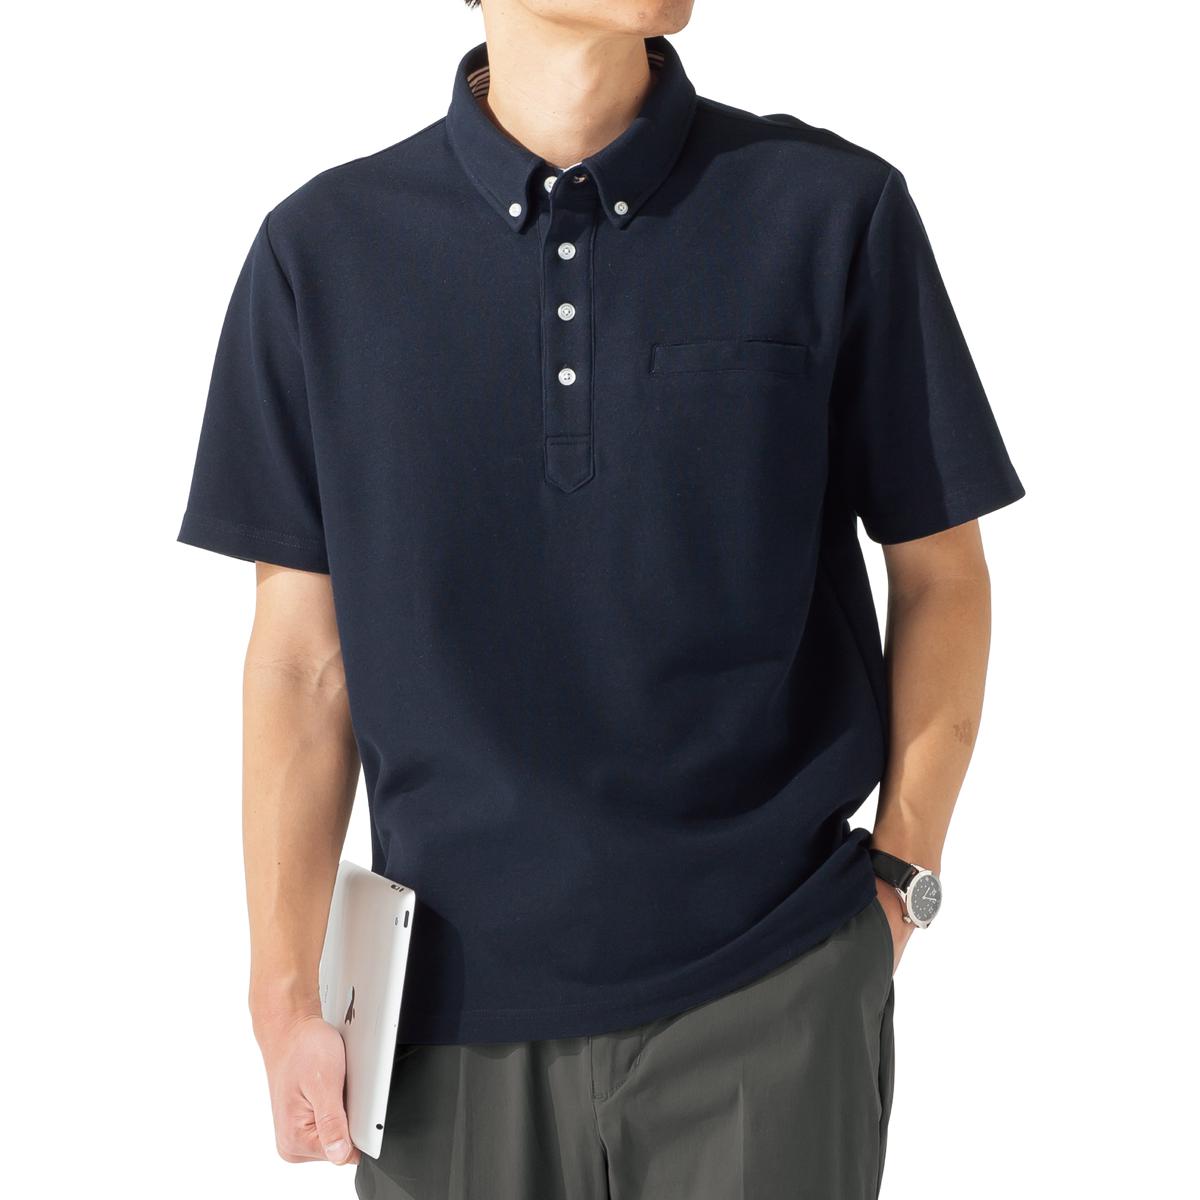 ドライ・ボタンダウンポロシャツ(半袖)/吸汗・速乾・抗菌防臭・UVカット機能付き ファッション通販ならセシール(cecile)